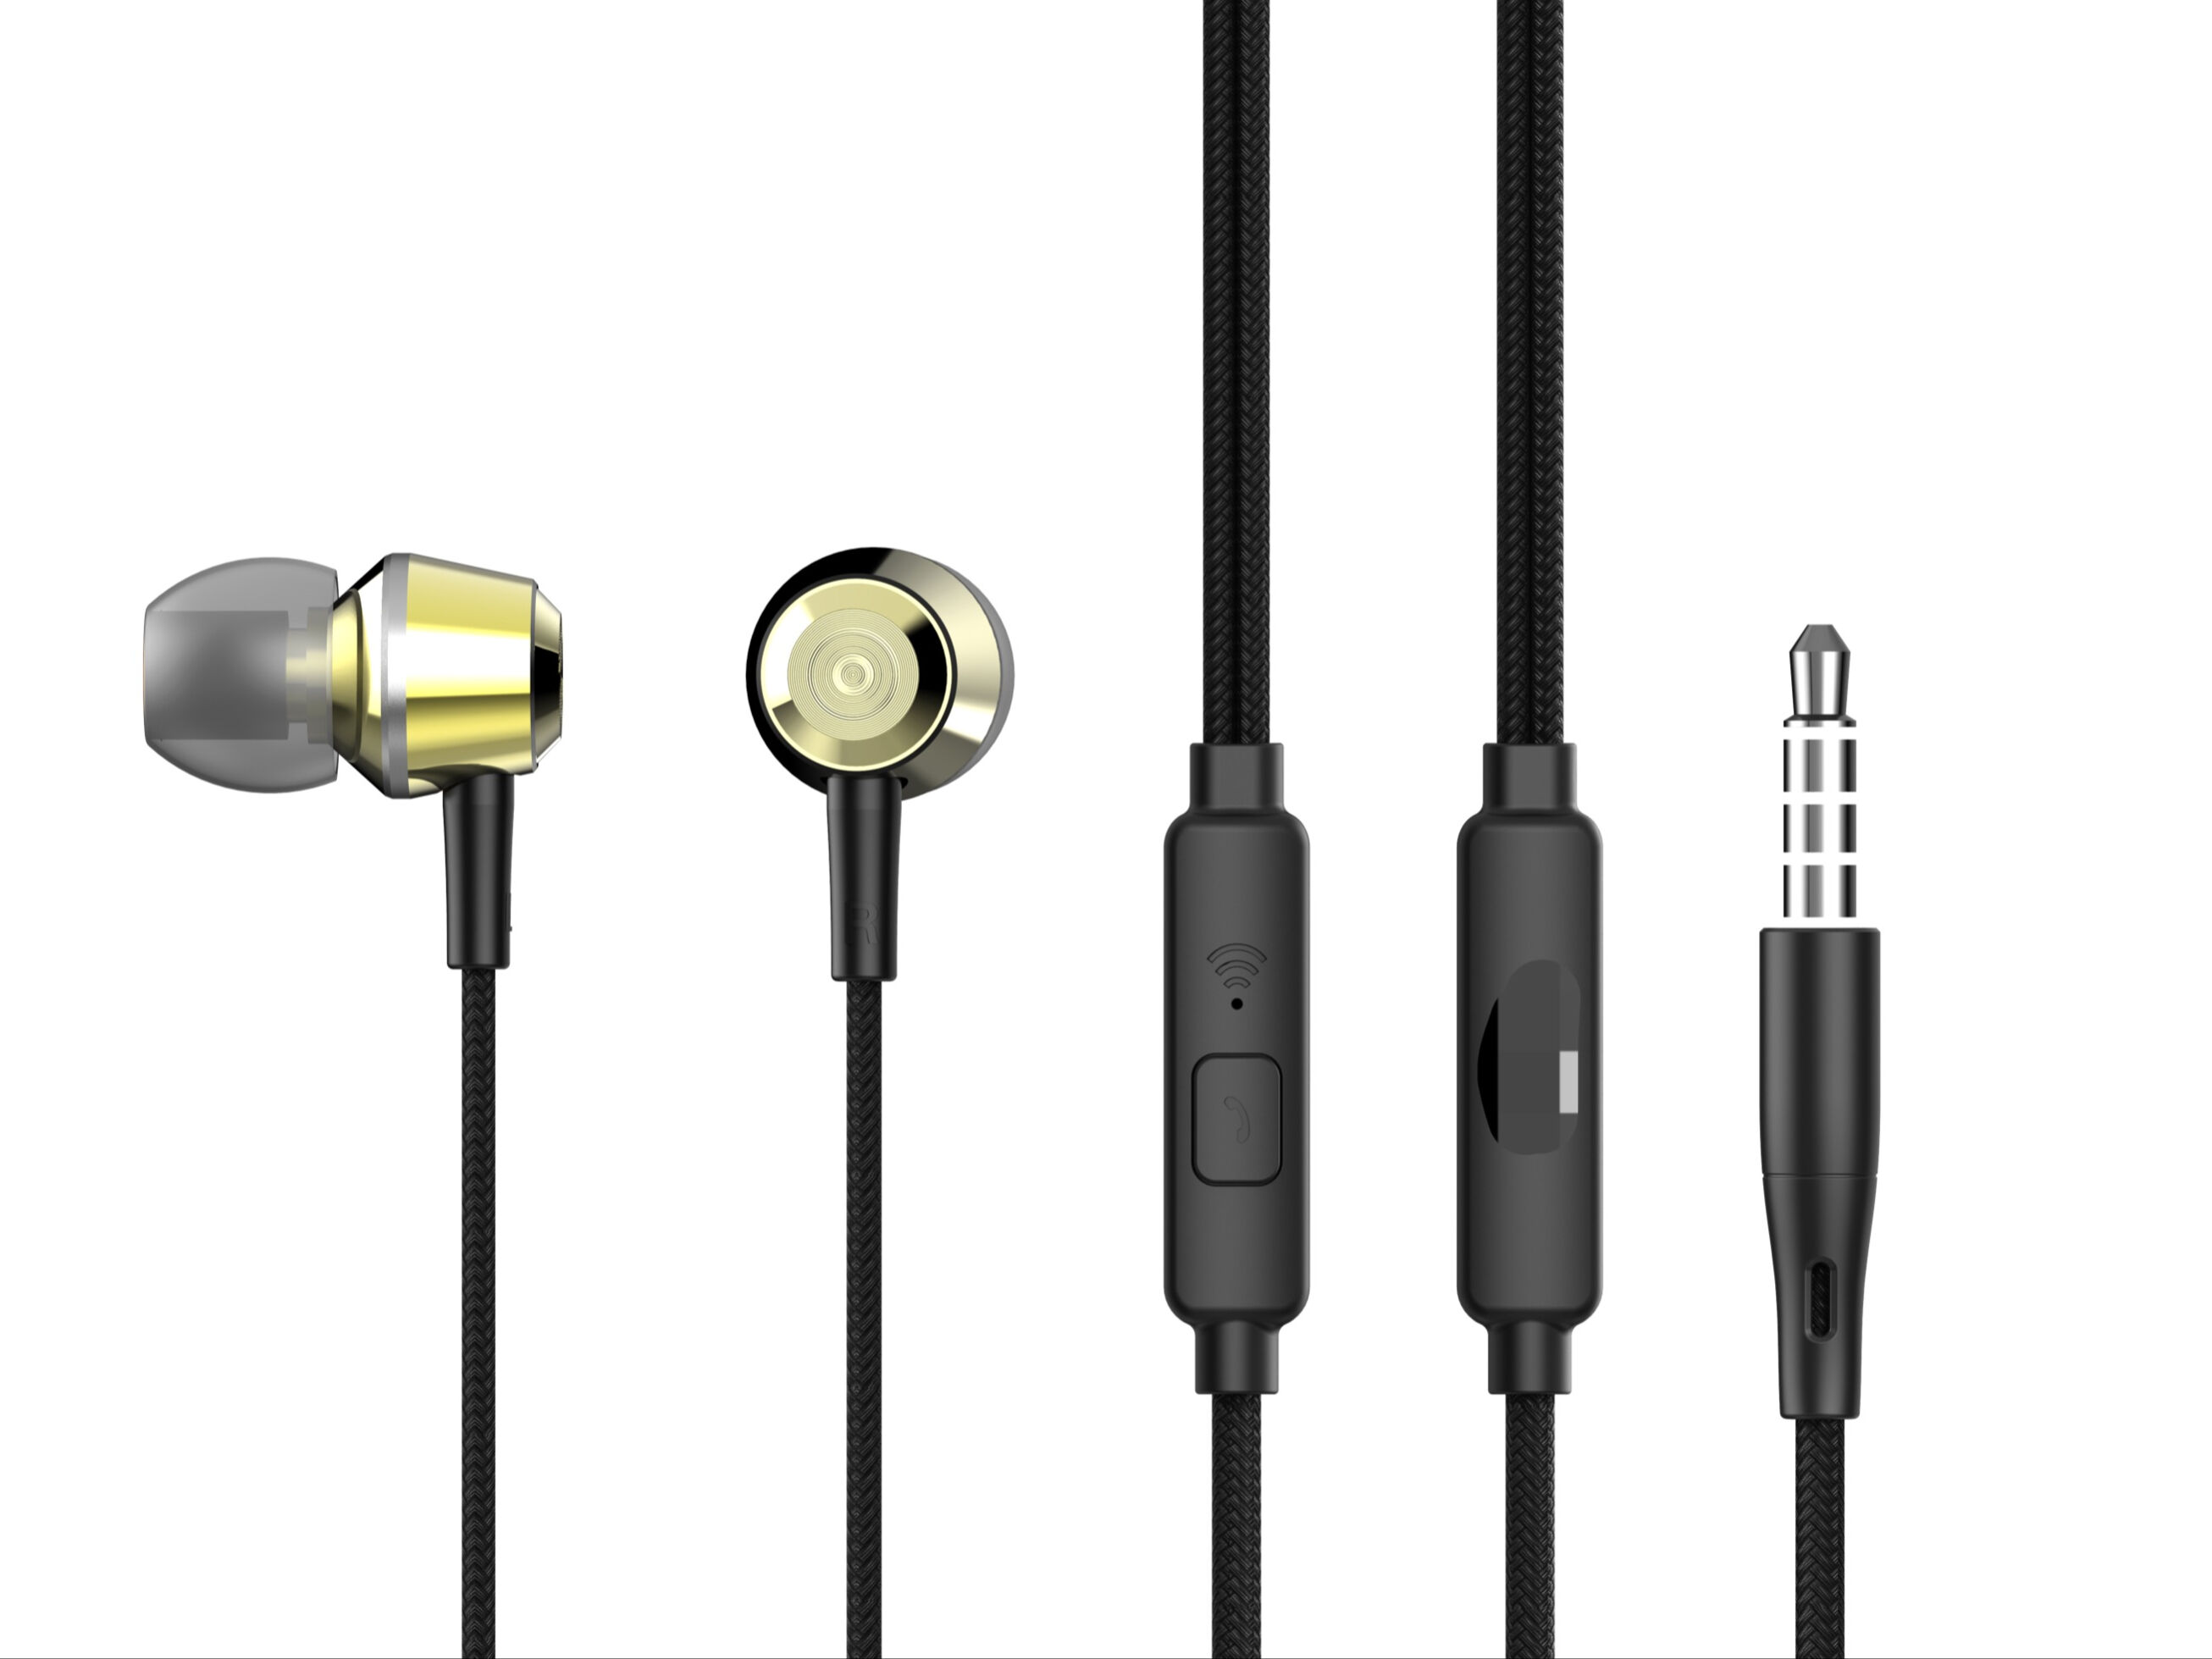 Écouteurs USB C UGREEN HiFi Stéréo avec Micro et Contrôle du Volume –  UGREEN – Zone Affaire